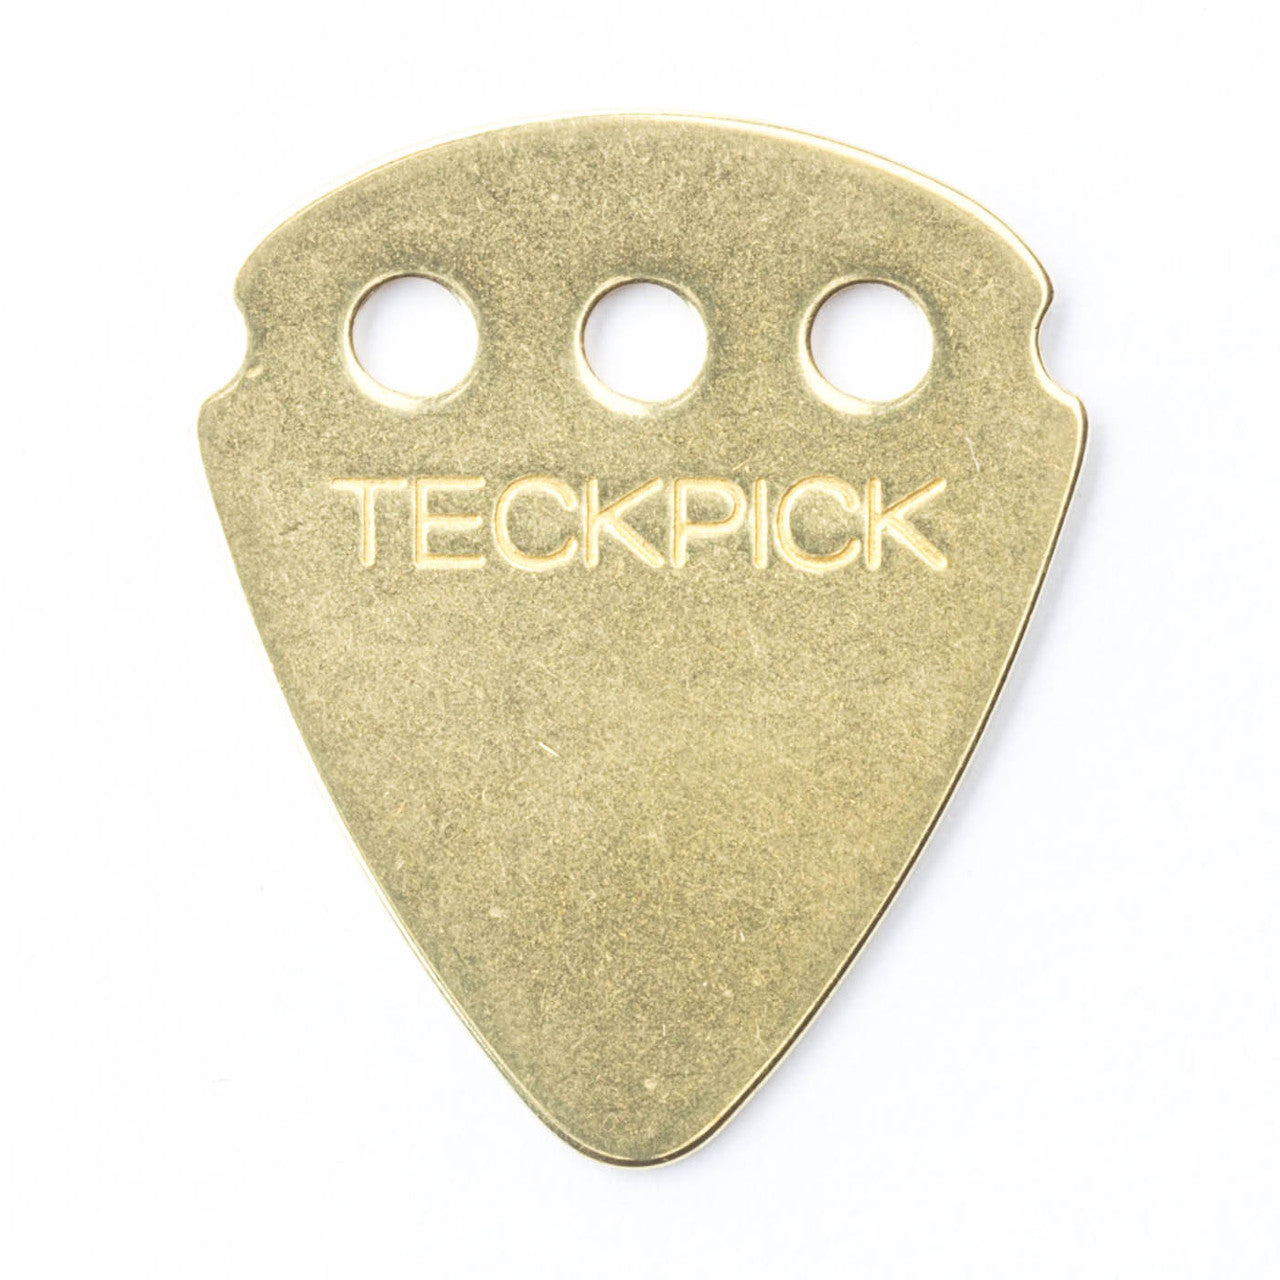 Dunlop Teckpick® Standard Brass